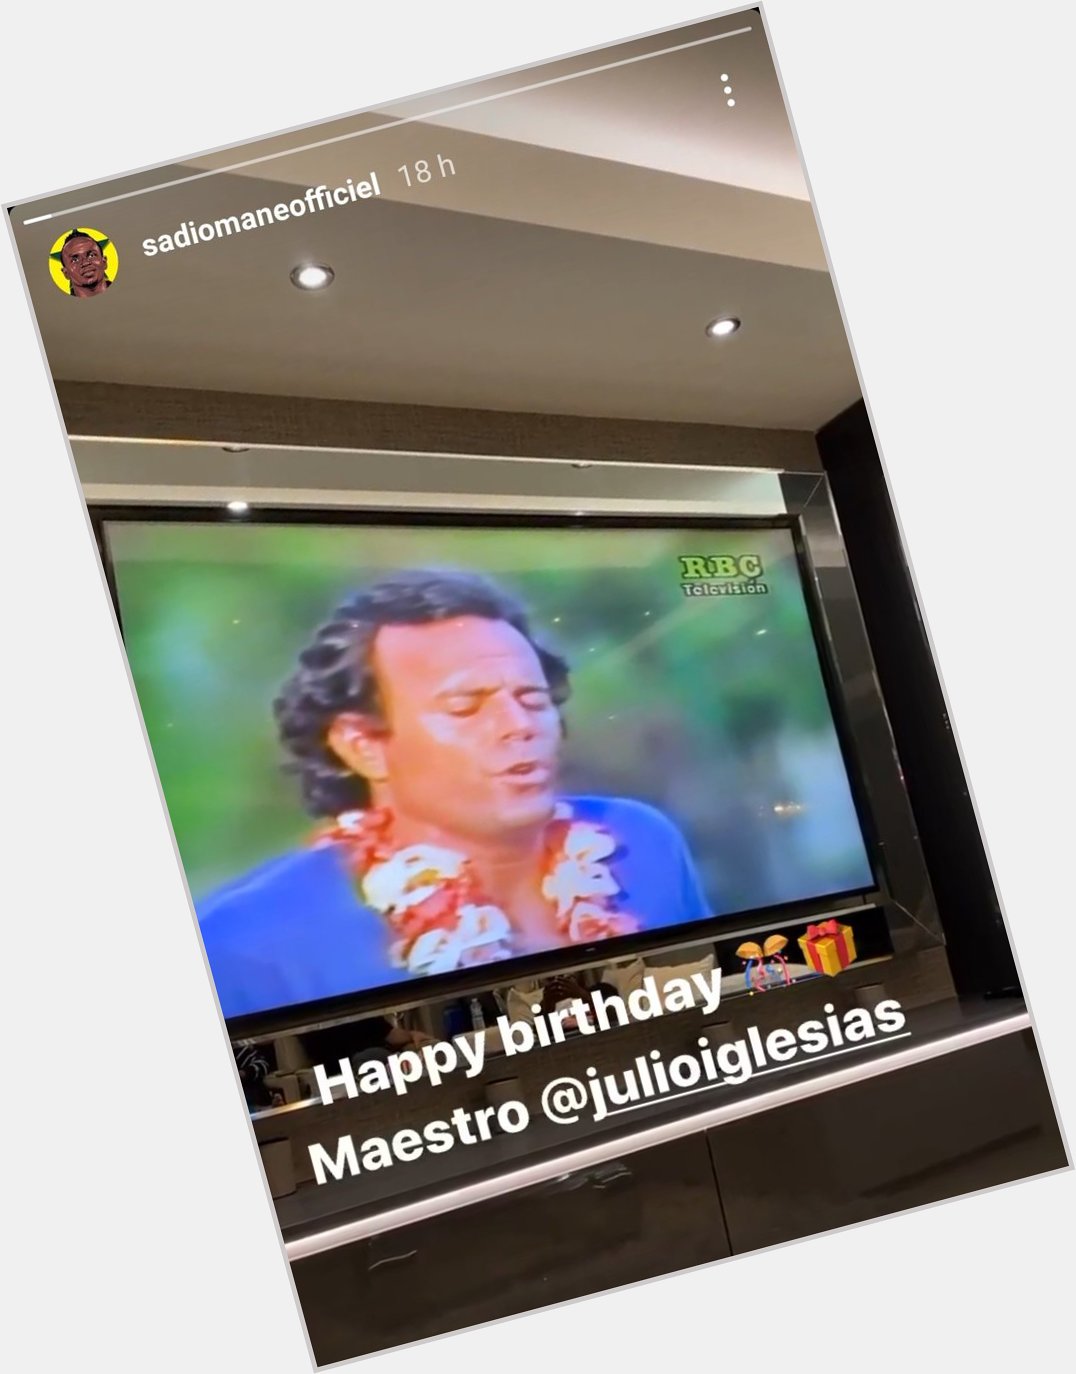 \"Happy birthday maestro\"

La felicitación de Sadio Mané a Julio Iglesias  